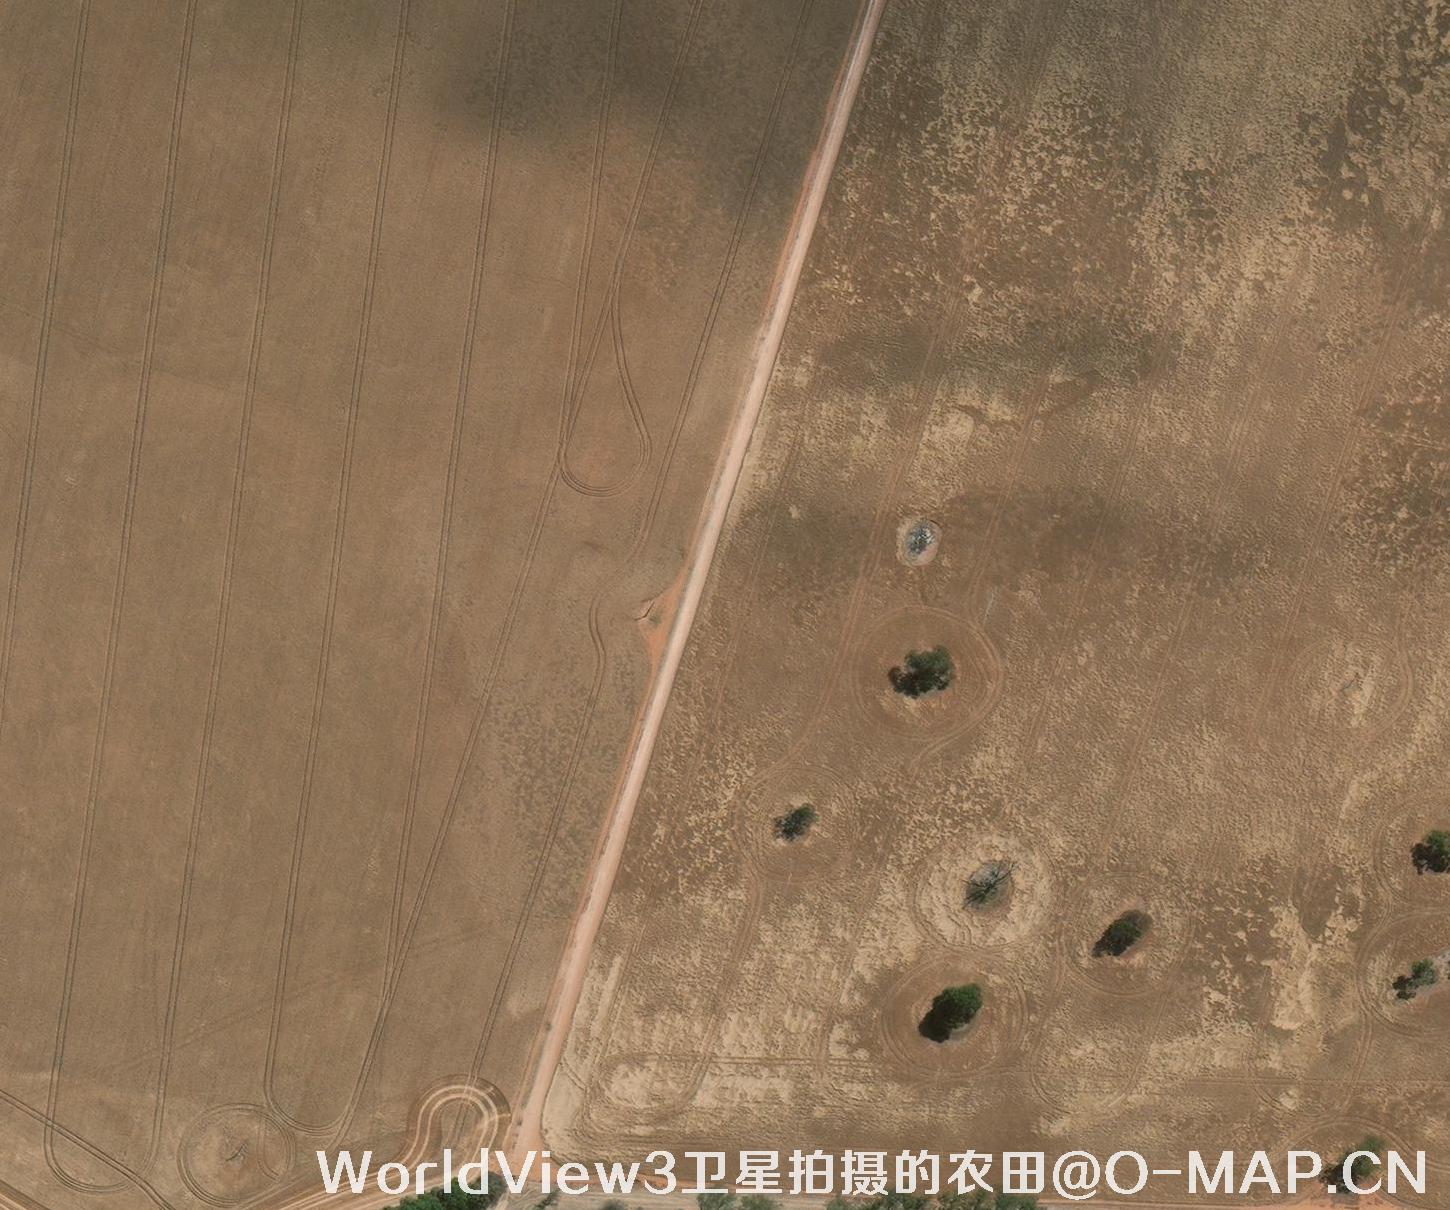 0.3米分辨率的农田WorldView3卫星图